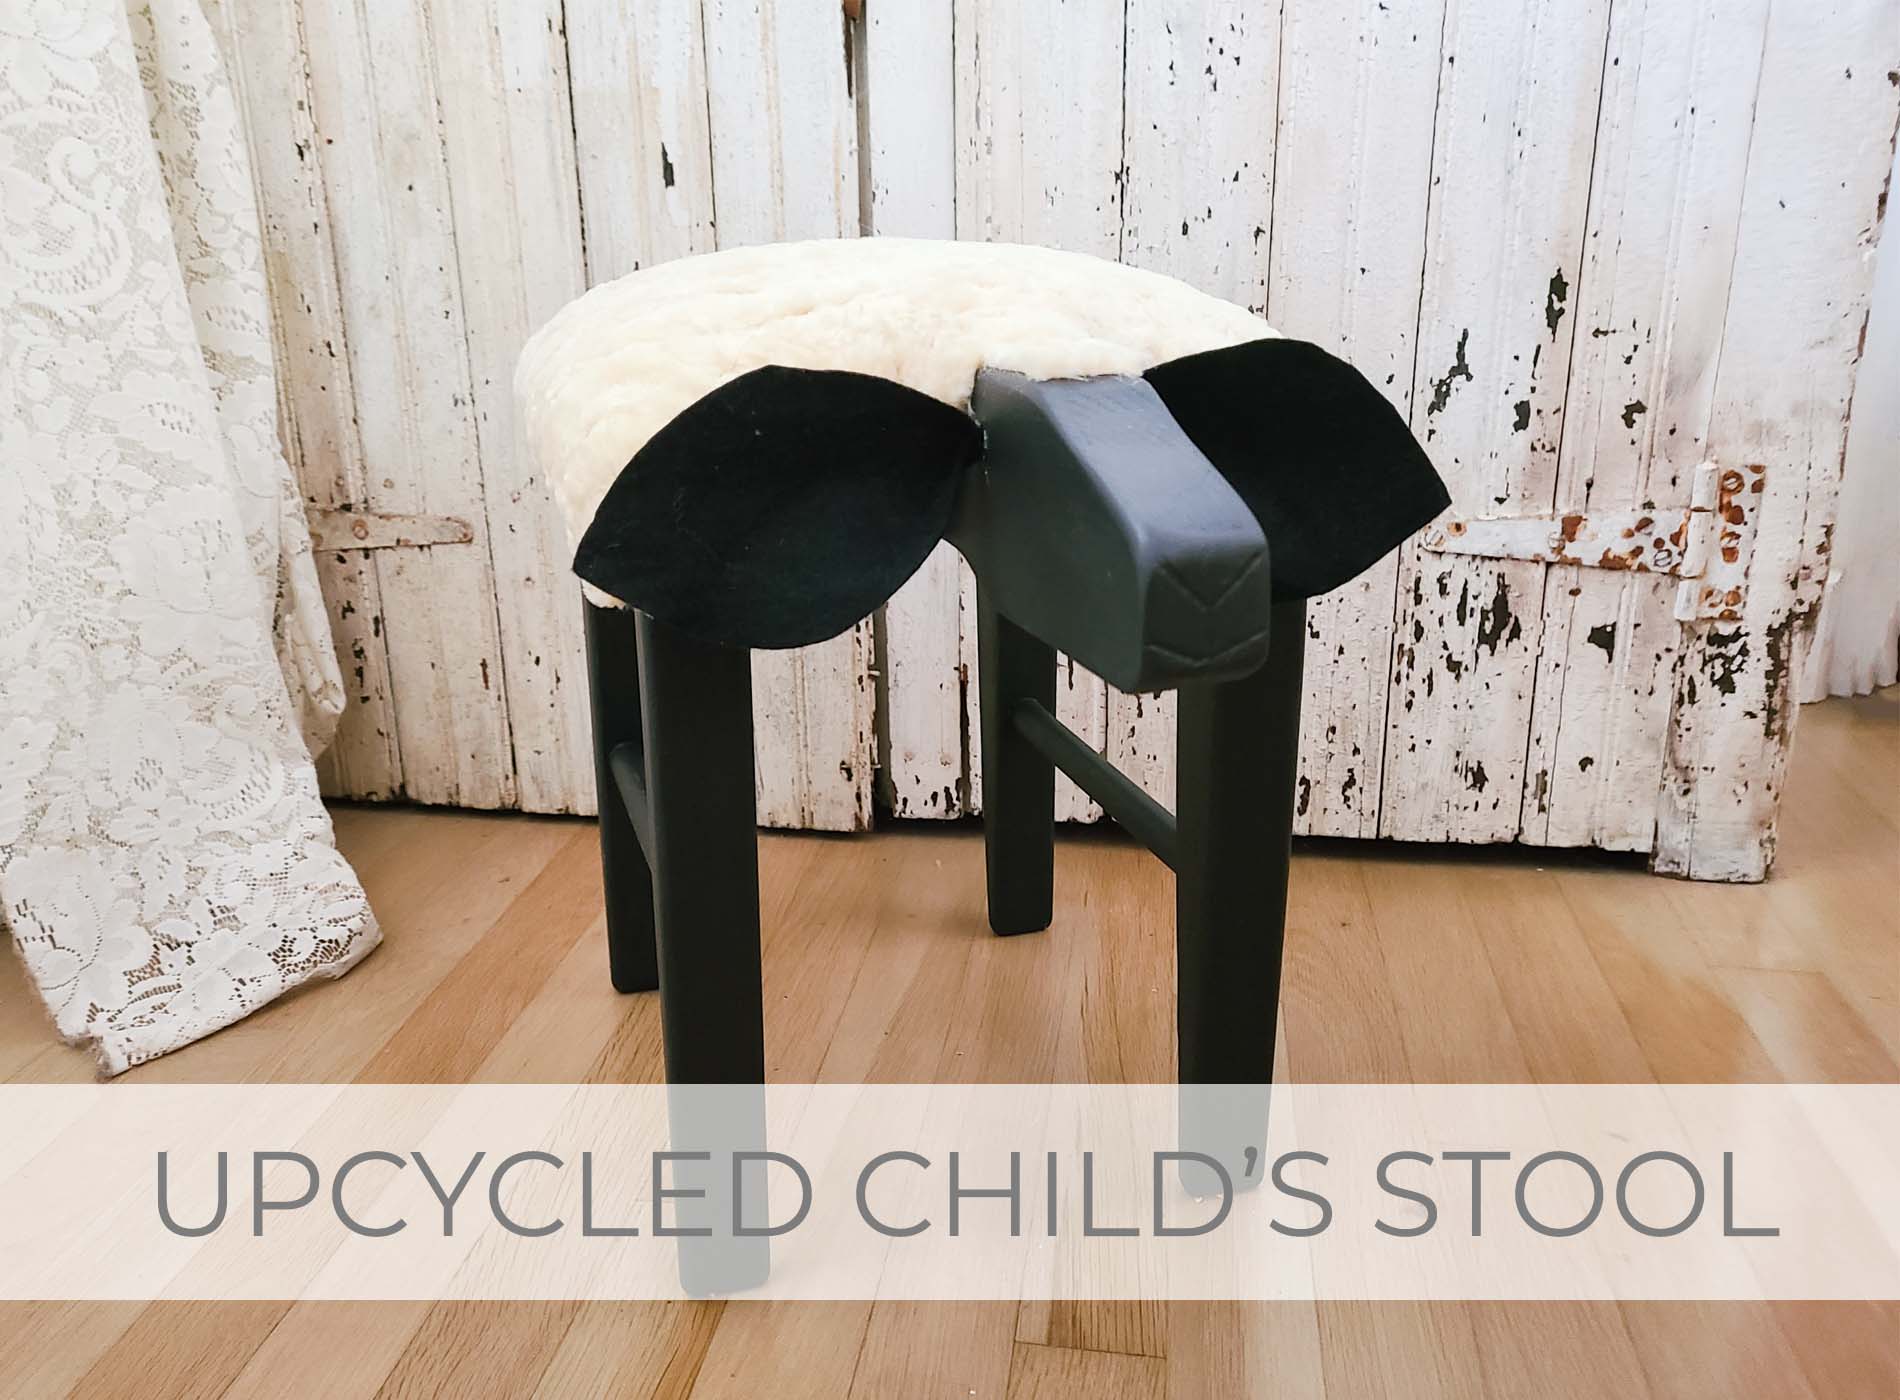 Showcase of Upcycled Child's Stool | prodigalpieces.com #prodigalpieces